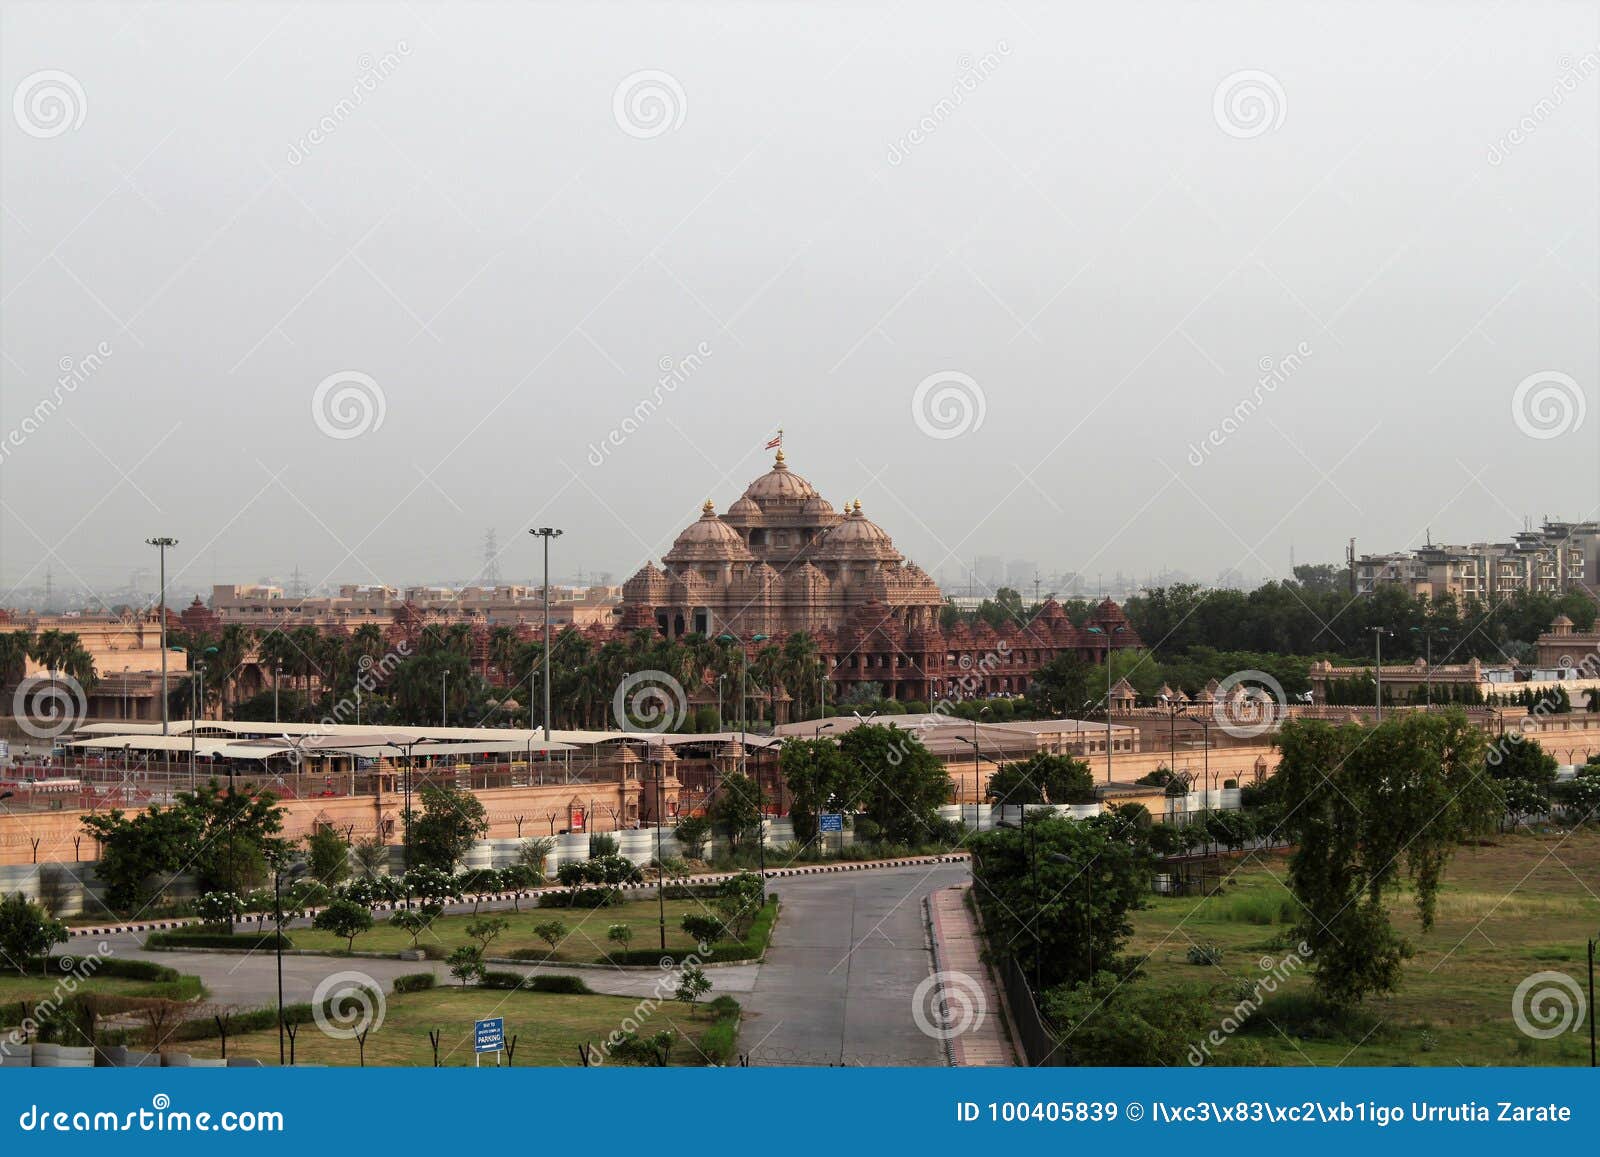 india, delhi, new delhi, old delhi, akshardham temple